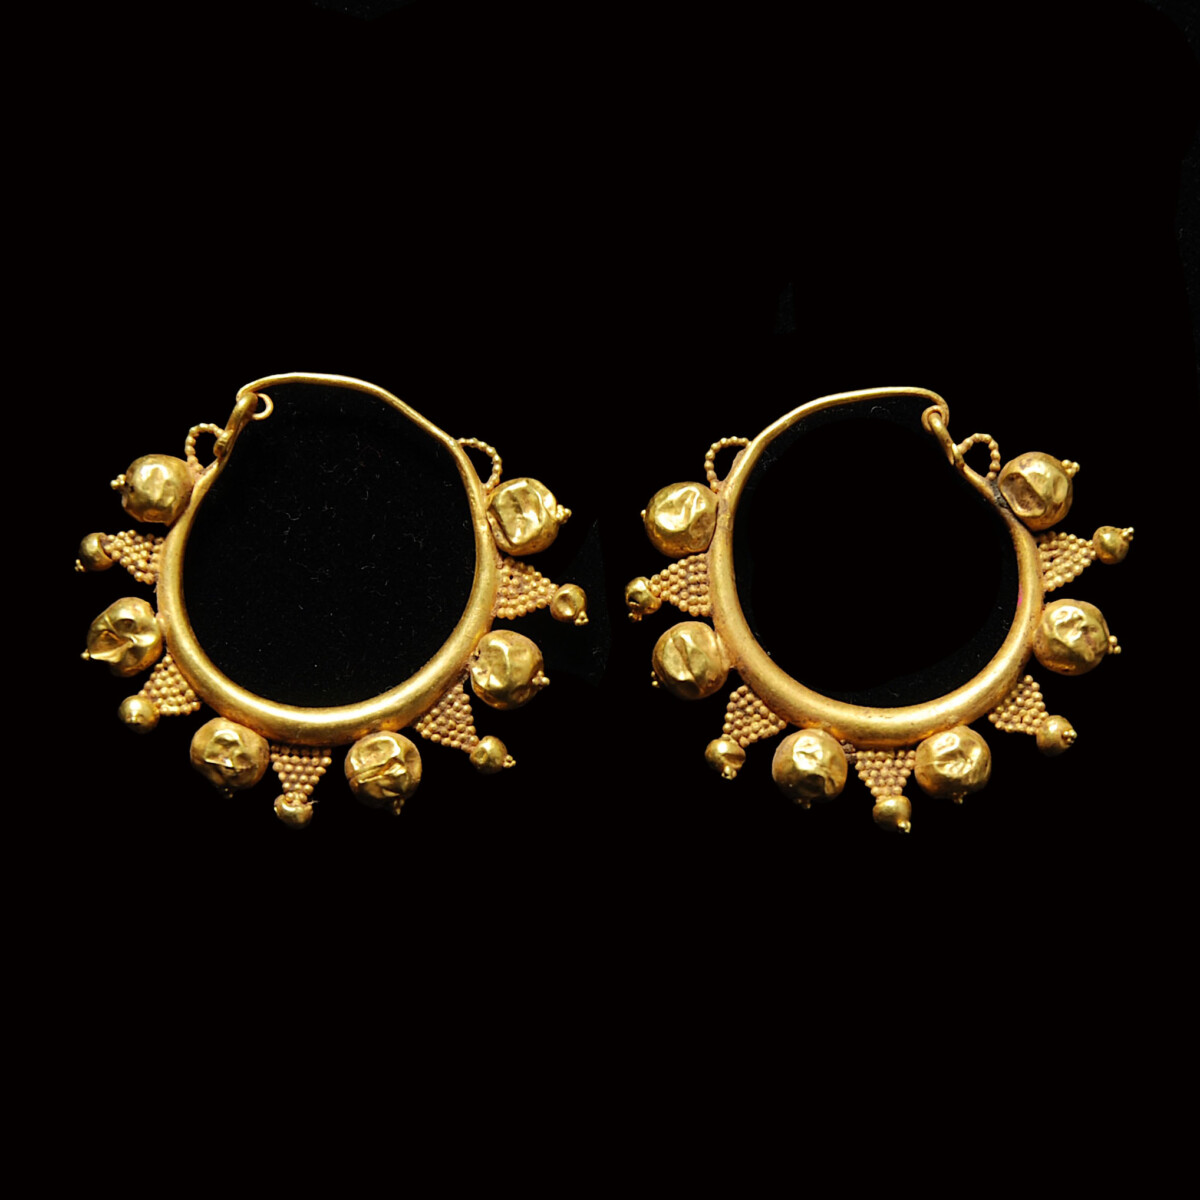 Greek gold hoop earrings with grapes